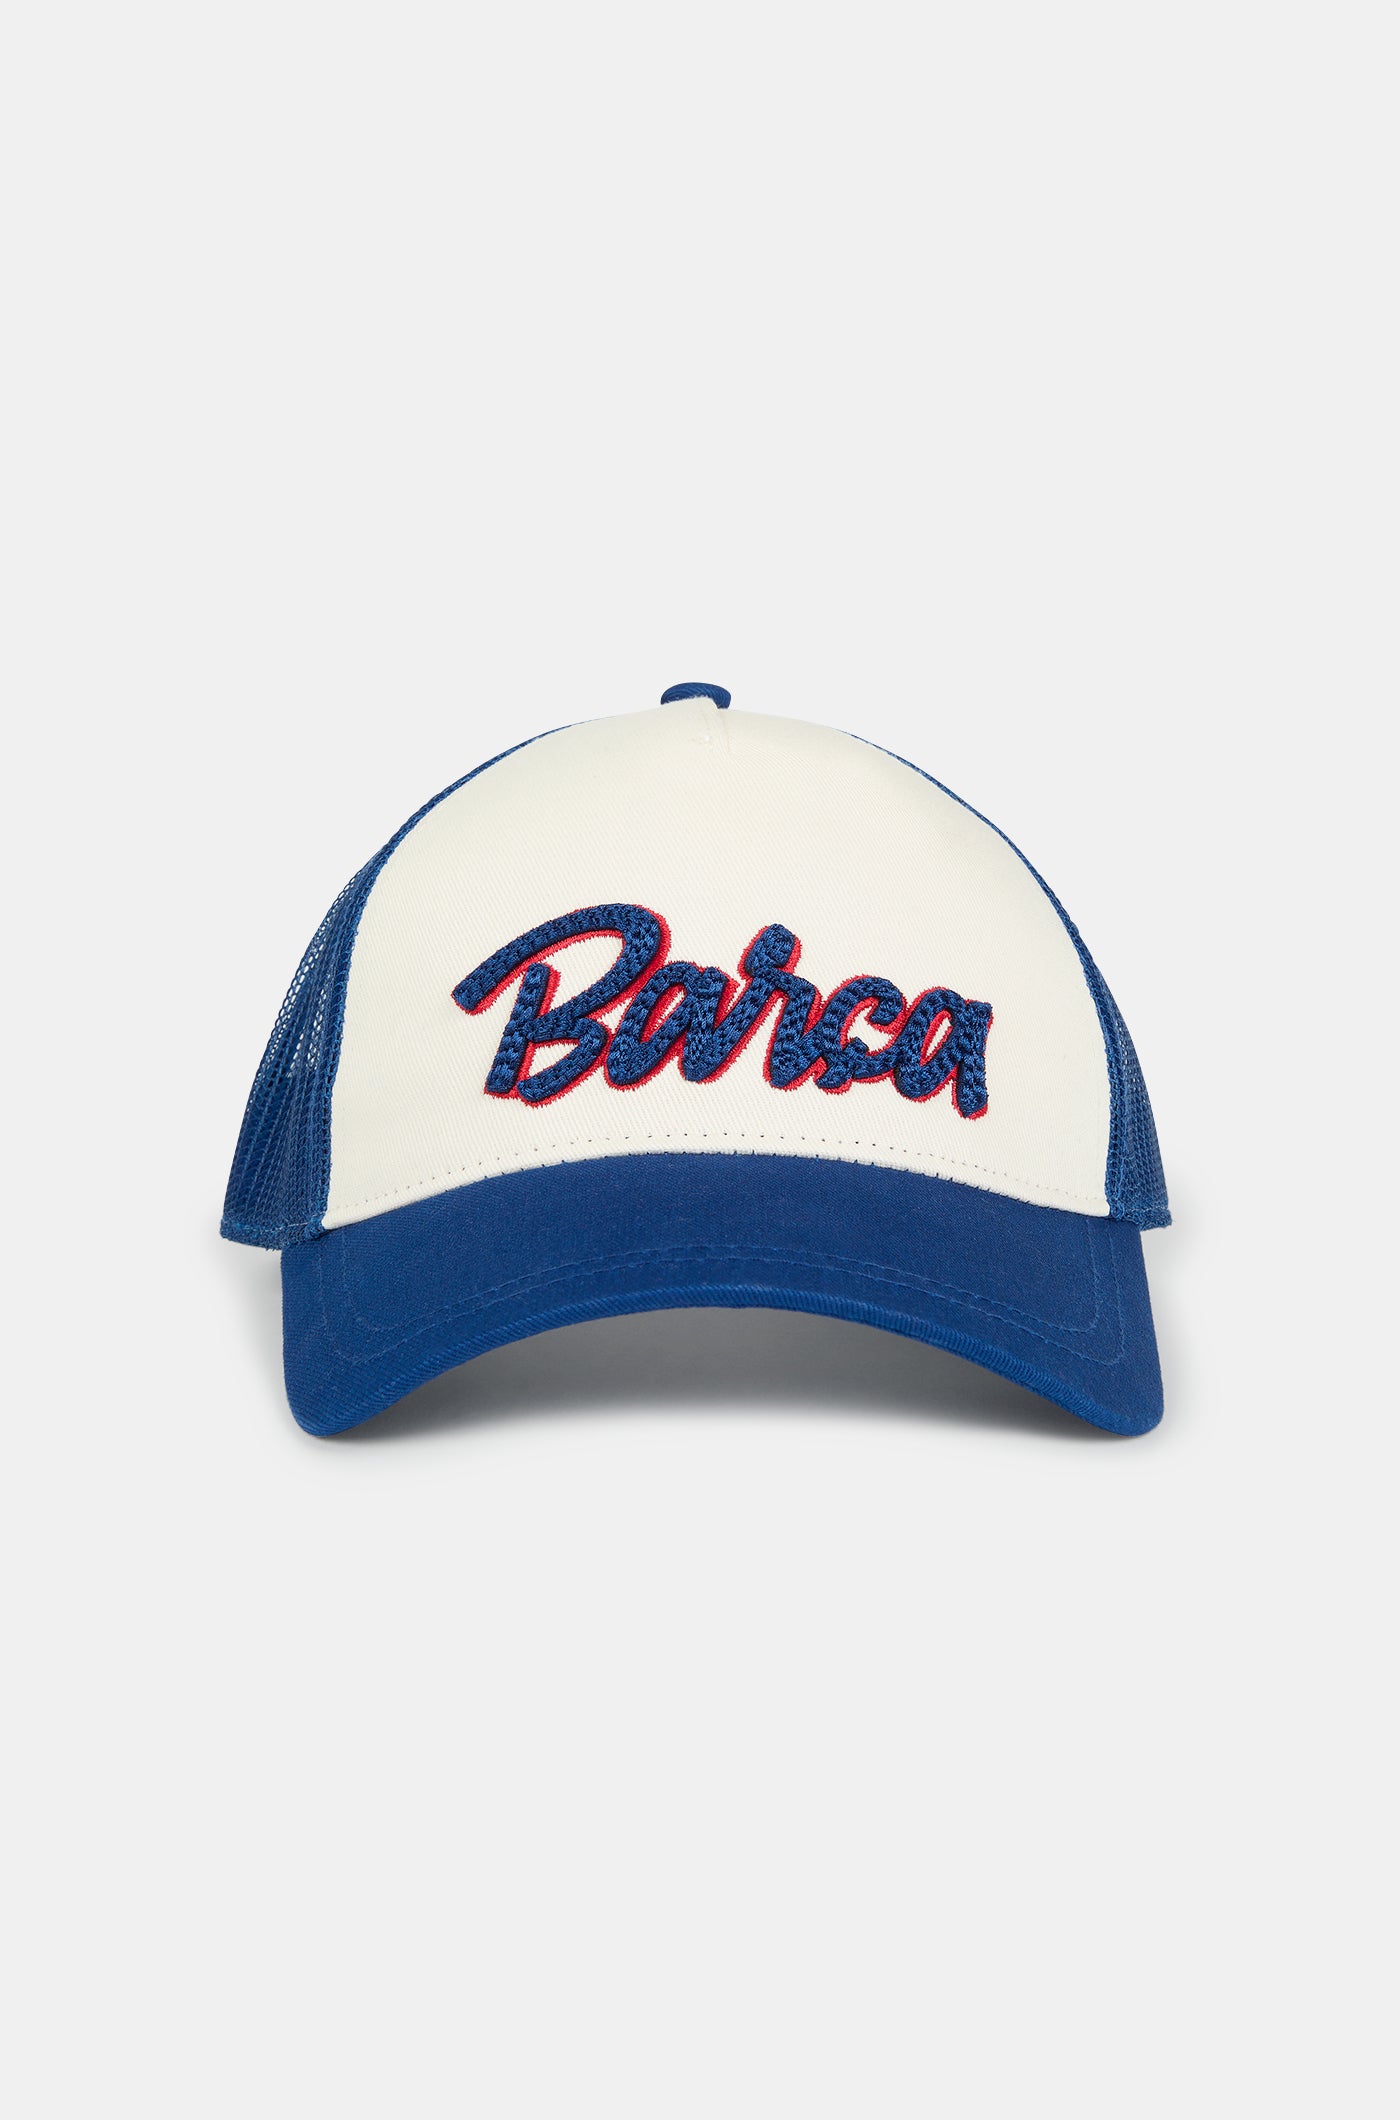 Gorra con letras "Barça"